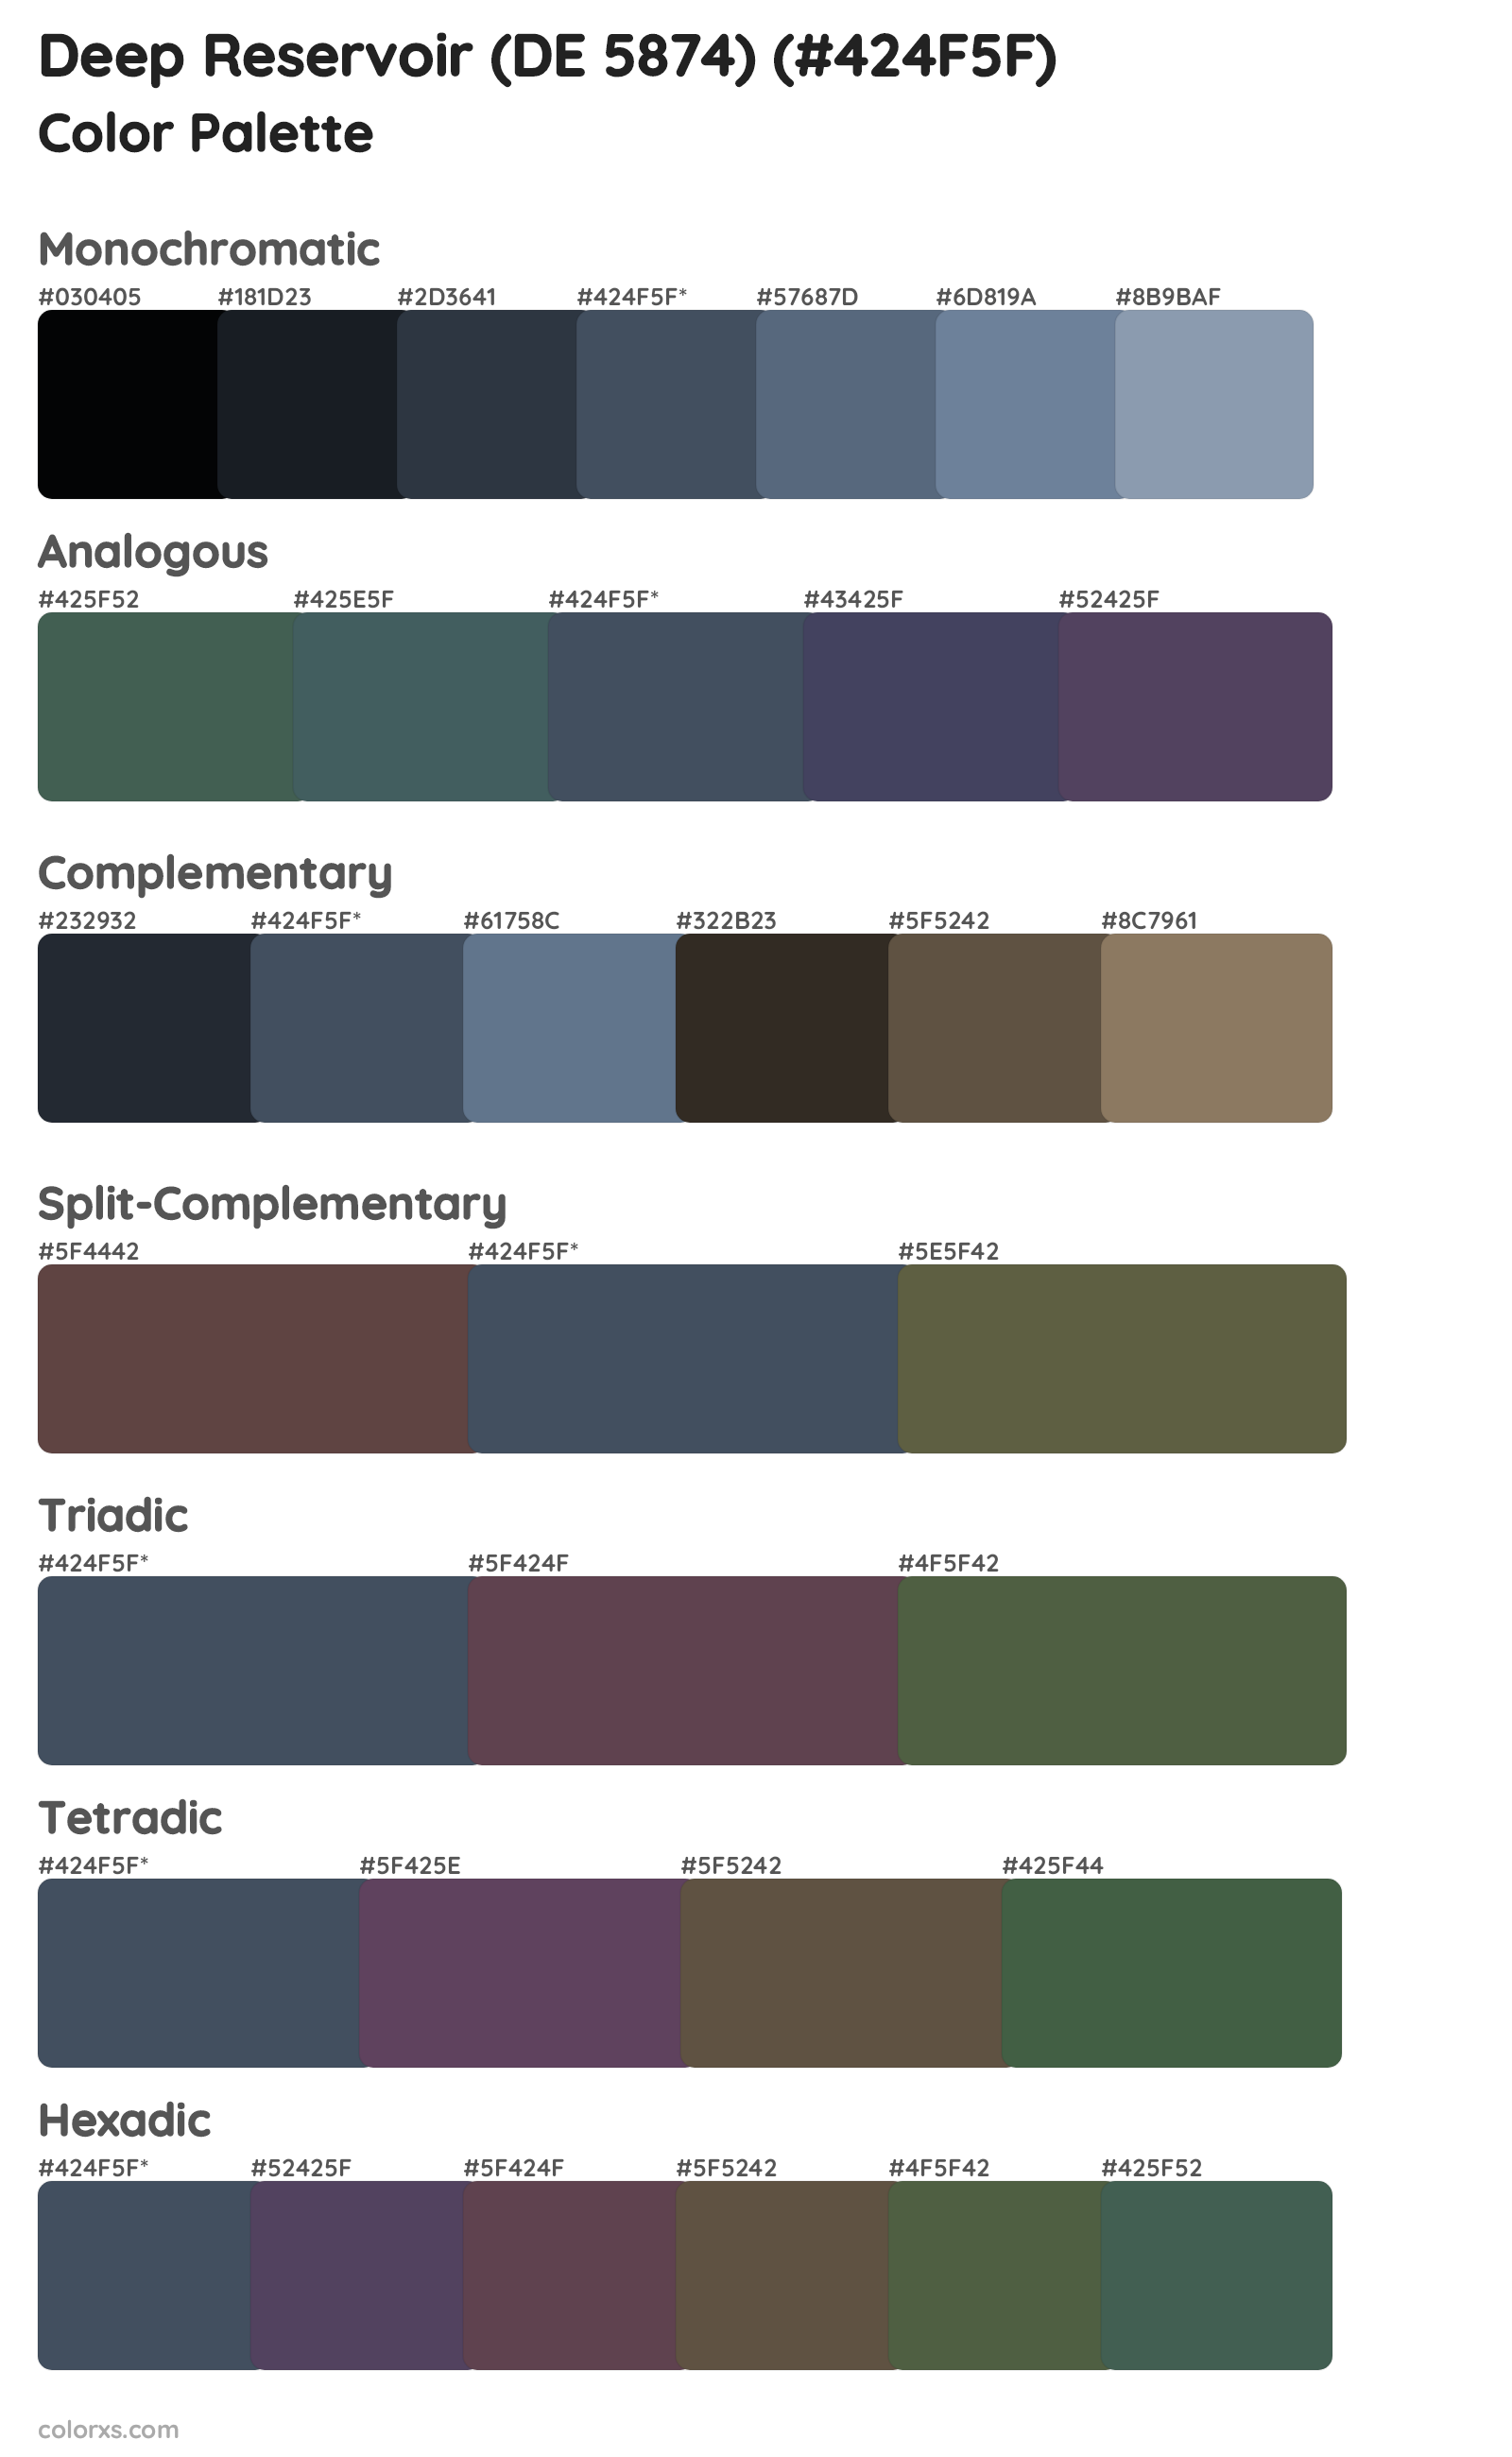 Deep Reservoir (DE 5874) Color Scheme Palettes